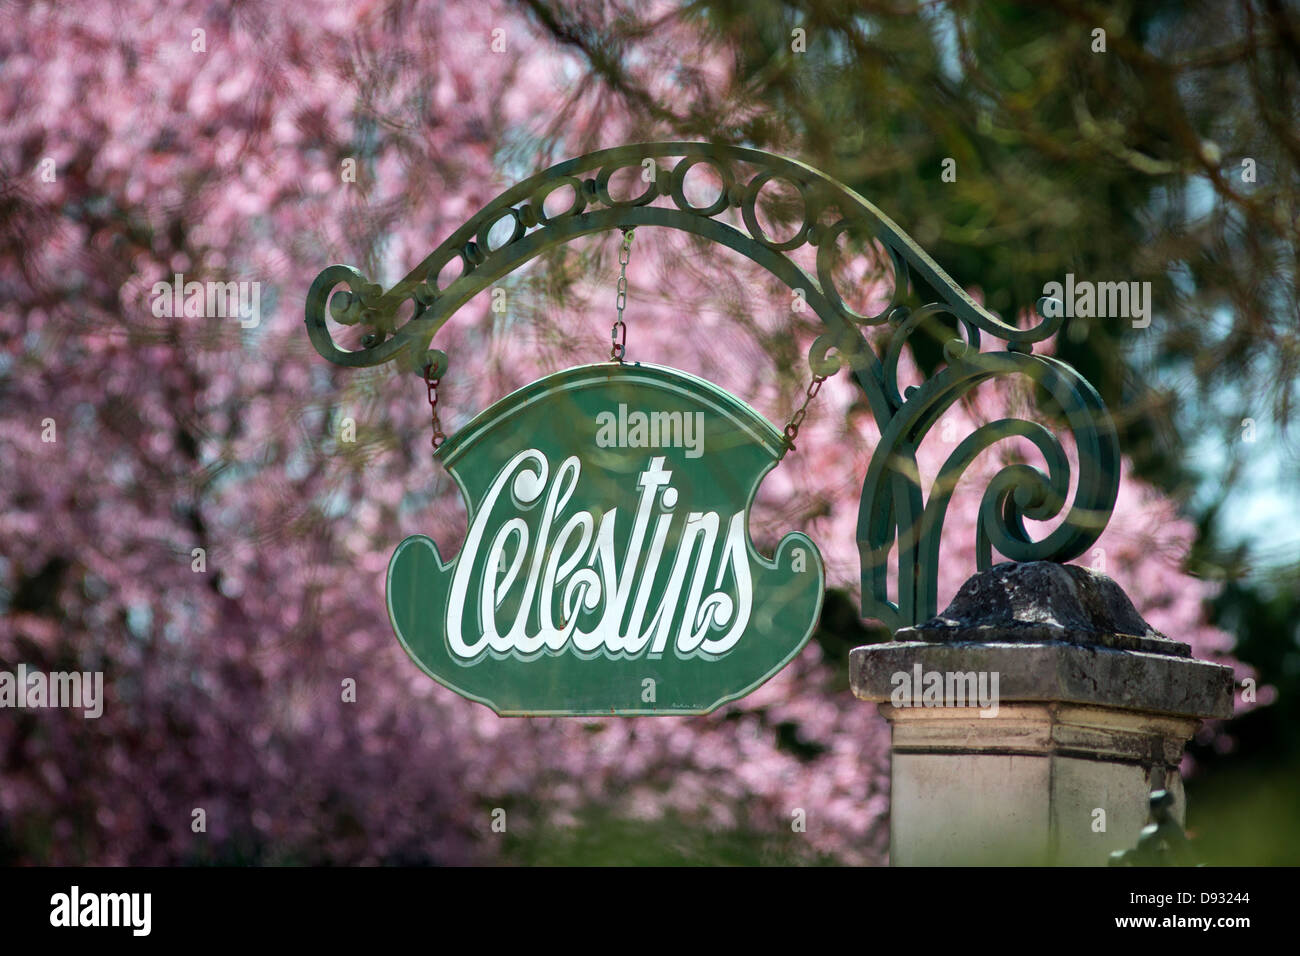 Un retro-style segno che indica il "Celestini' termale molla, a Vichy (Francia). Enseigne rétro de la Source des Celestini. Foto Stock